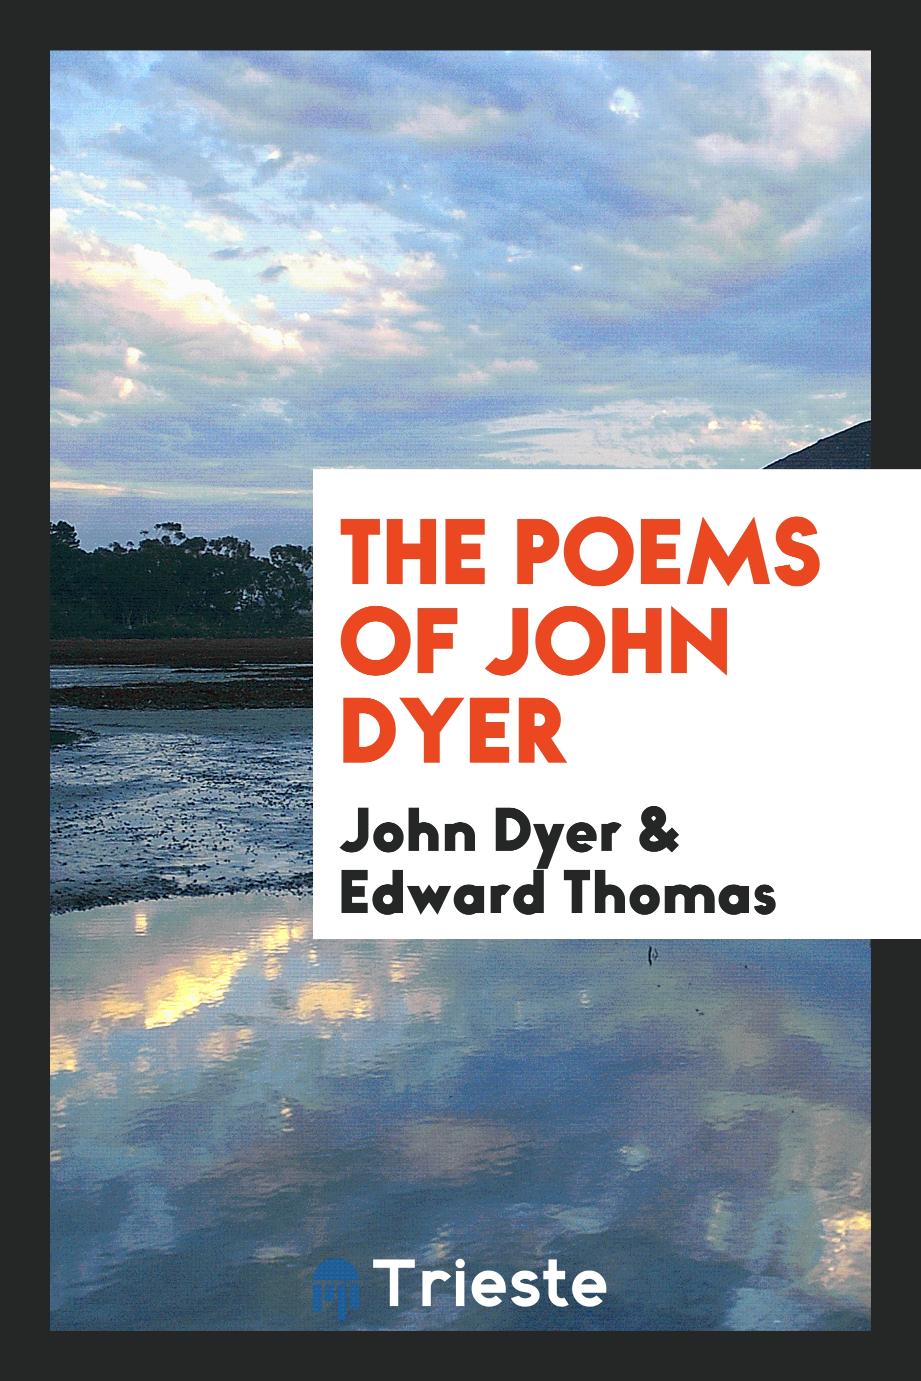 The poems of John Dyer